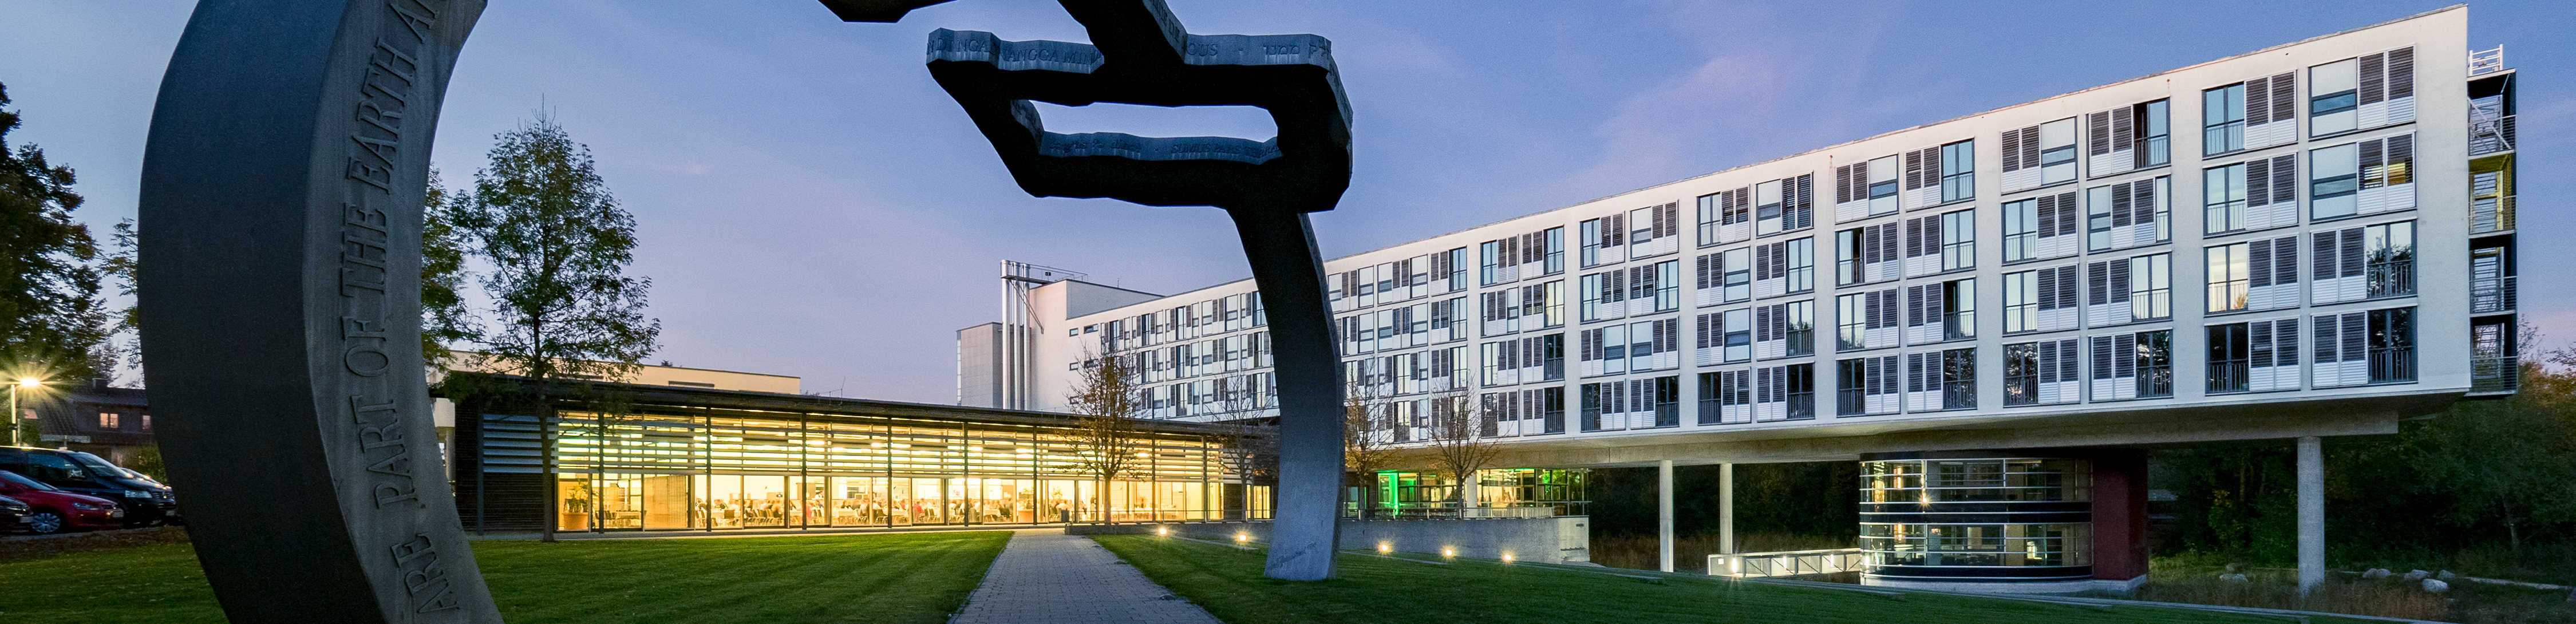 Das Bild zeigt das BVS-Bildungszentrum in Lauingen